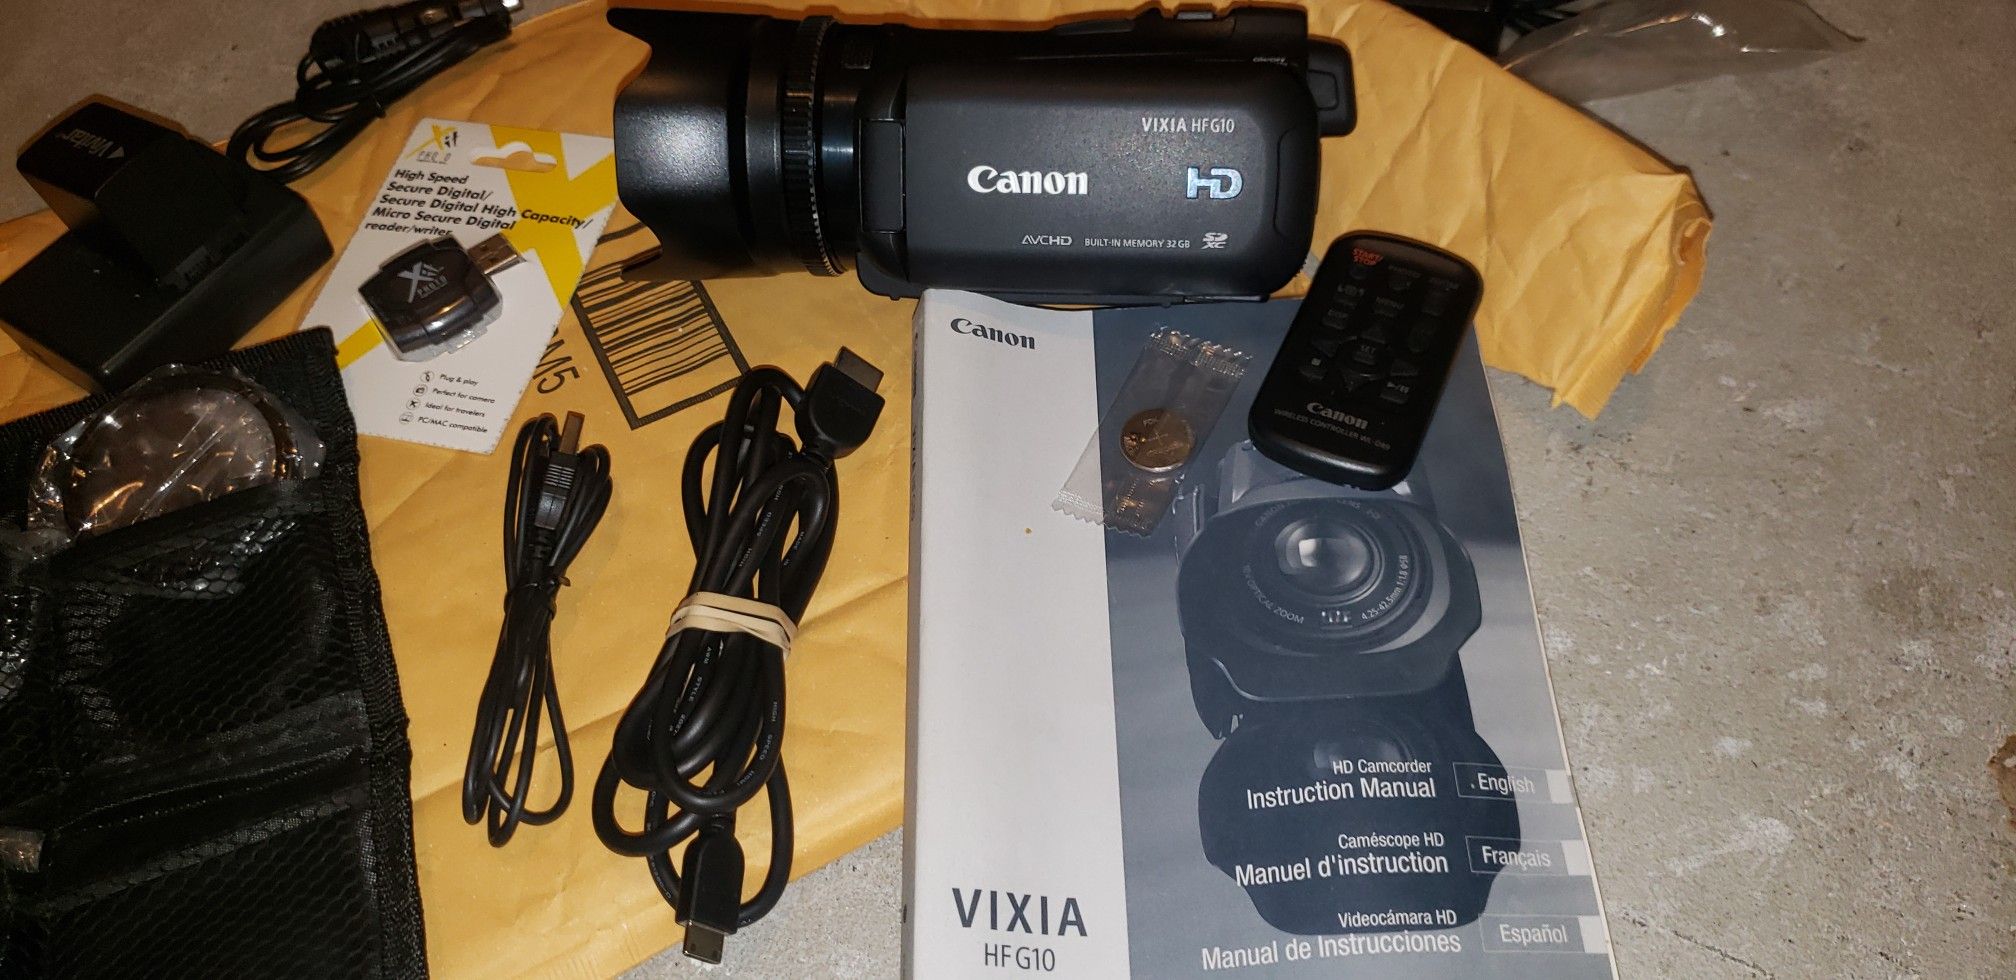 Canon Vixia HFG10 movie camera